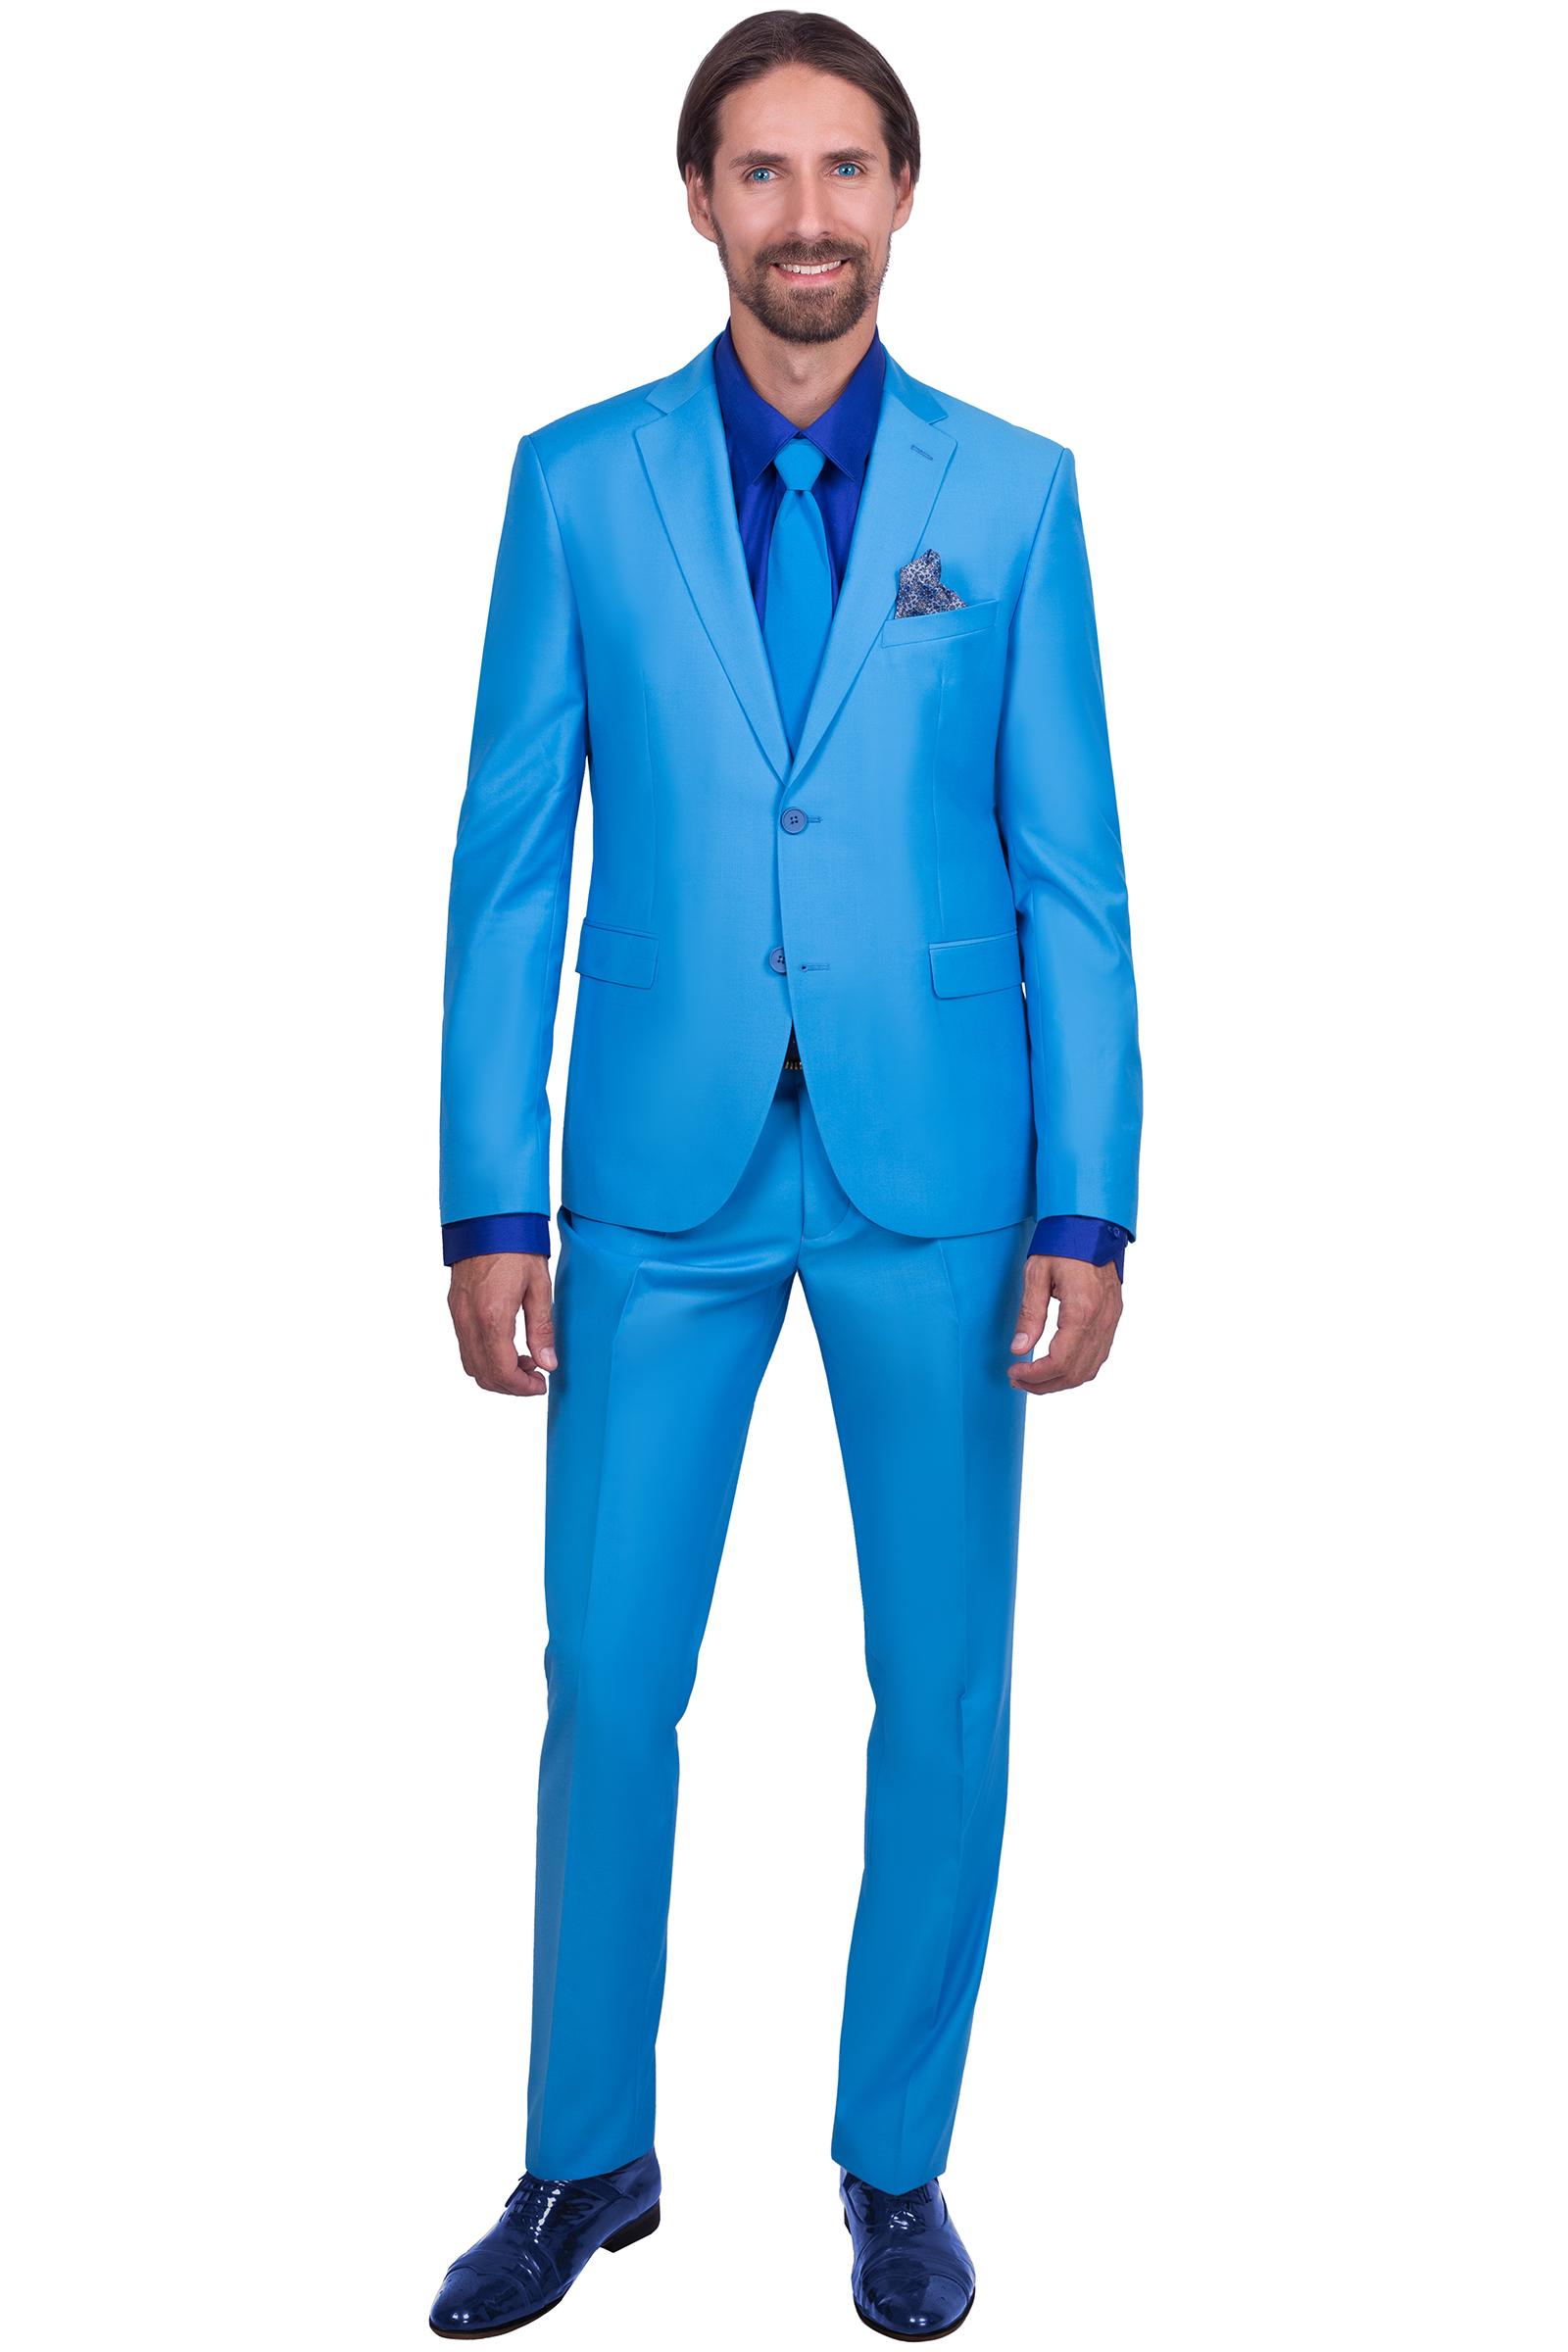 Голубой костюм мужской двойка - купить за 18500 руб: недорогие костюмы для  сцены в СПб